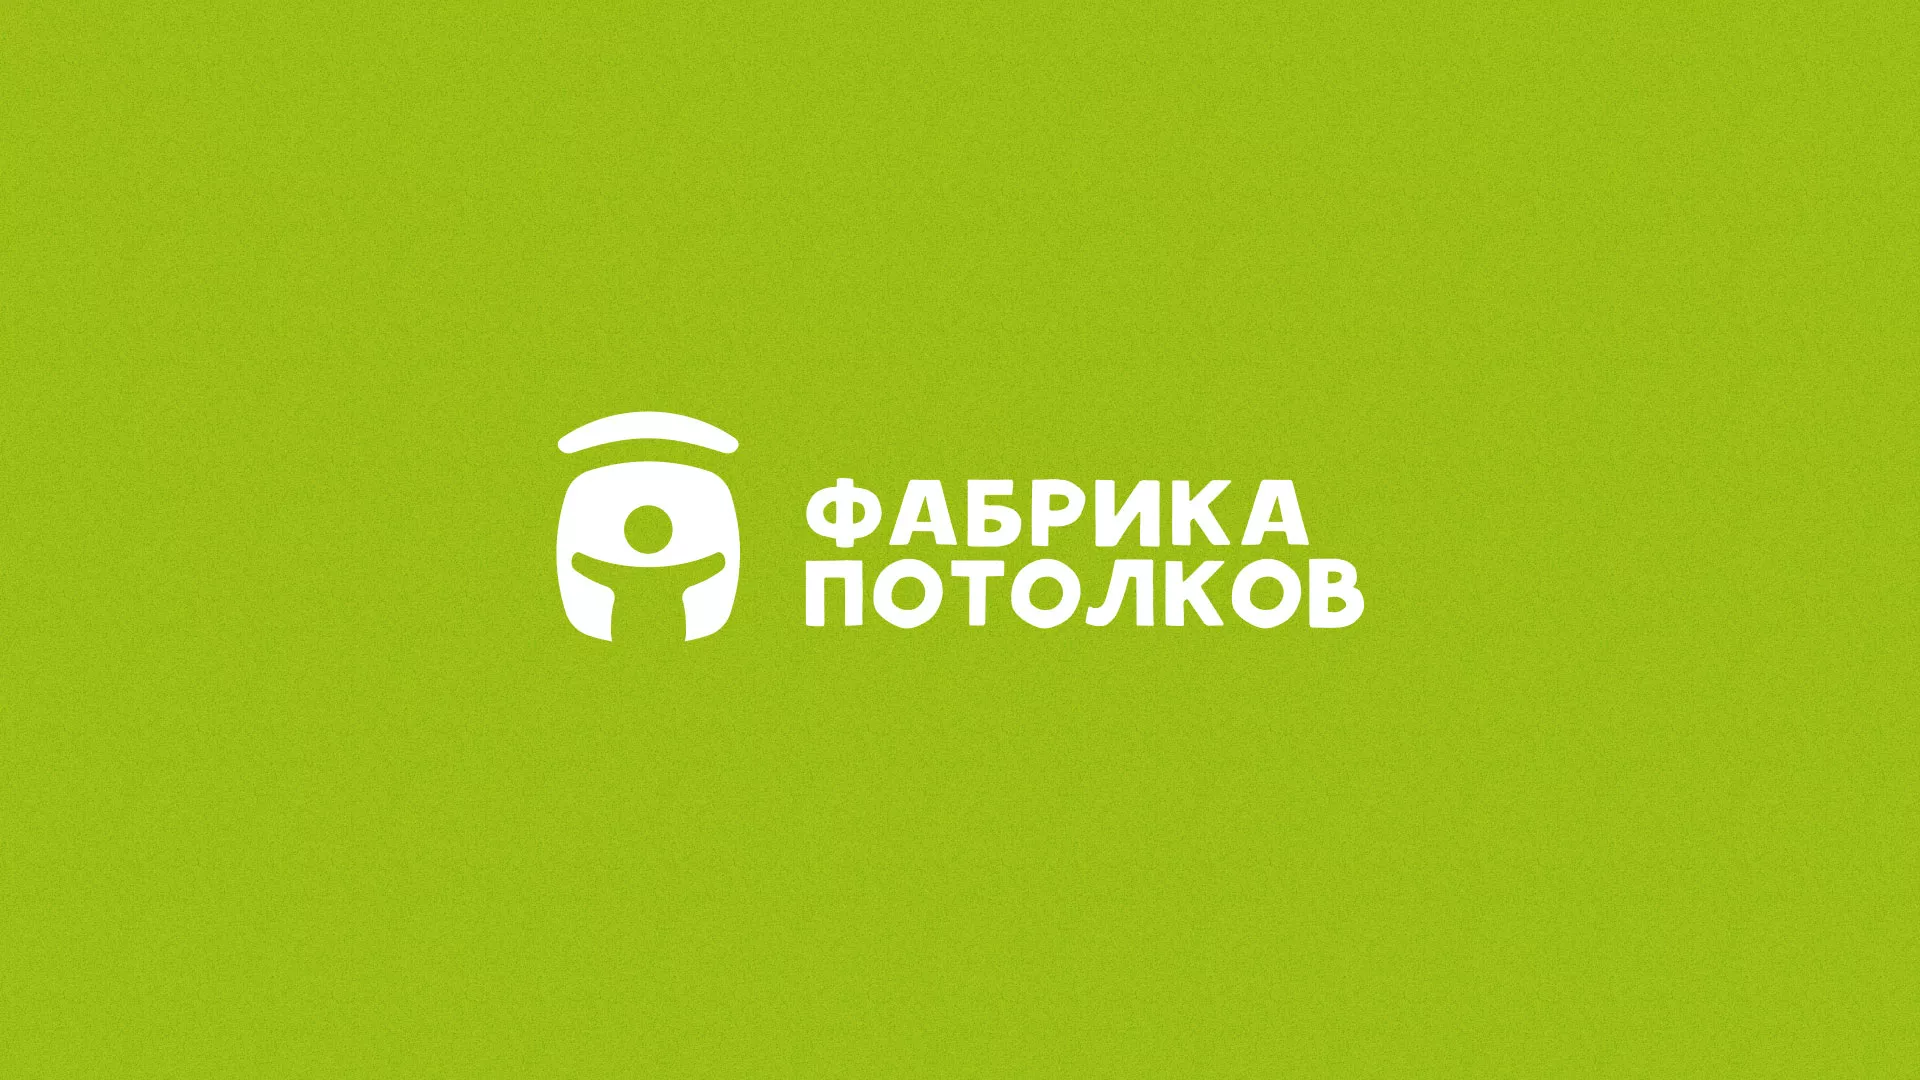 Разработка логотипа для производства натяжных потолков в Липках